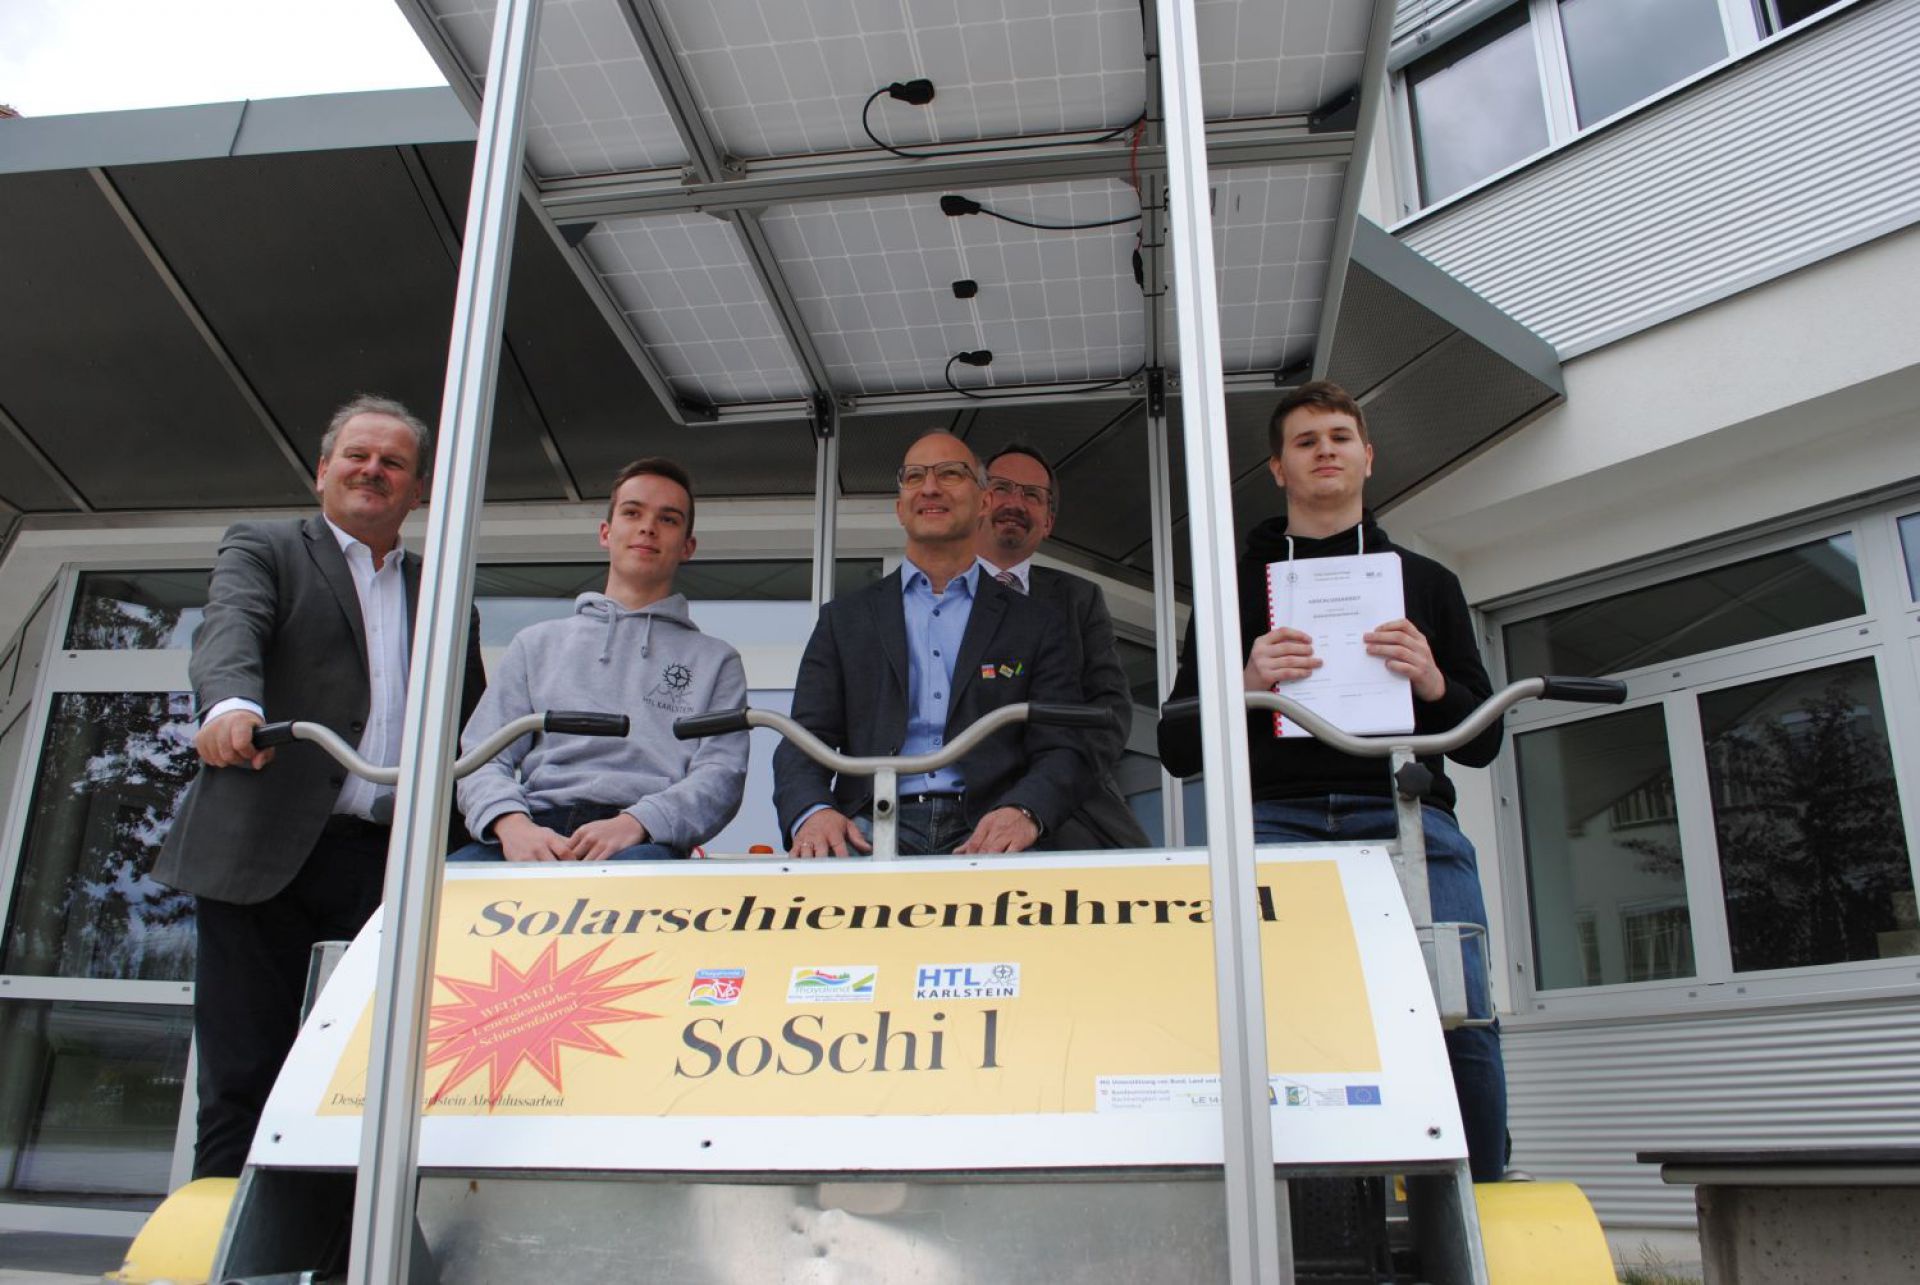 Solarschienenfahrrad SoSchi